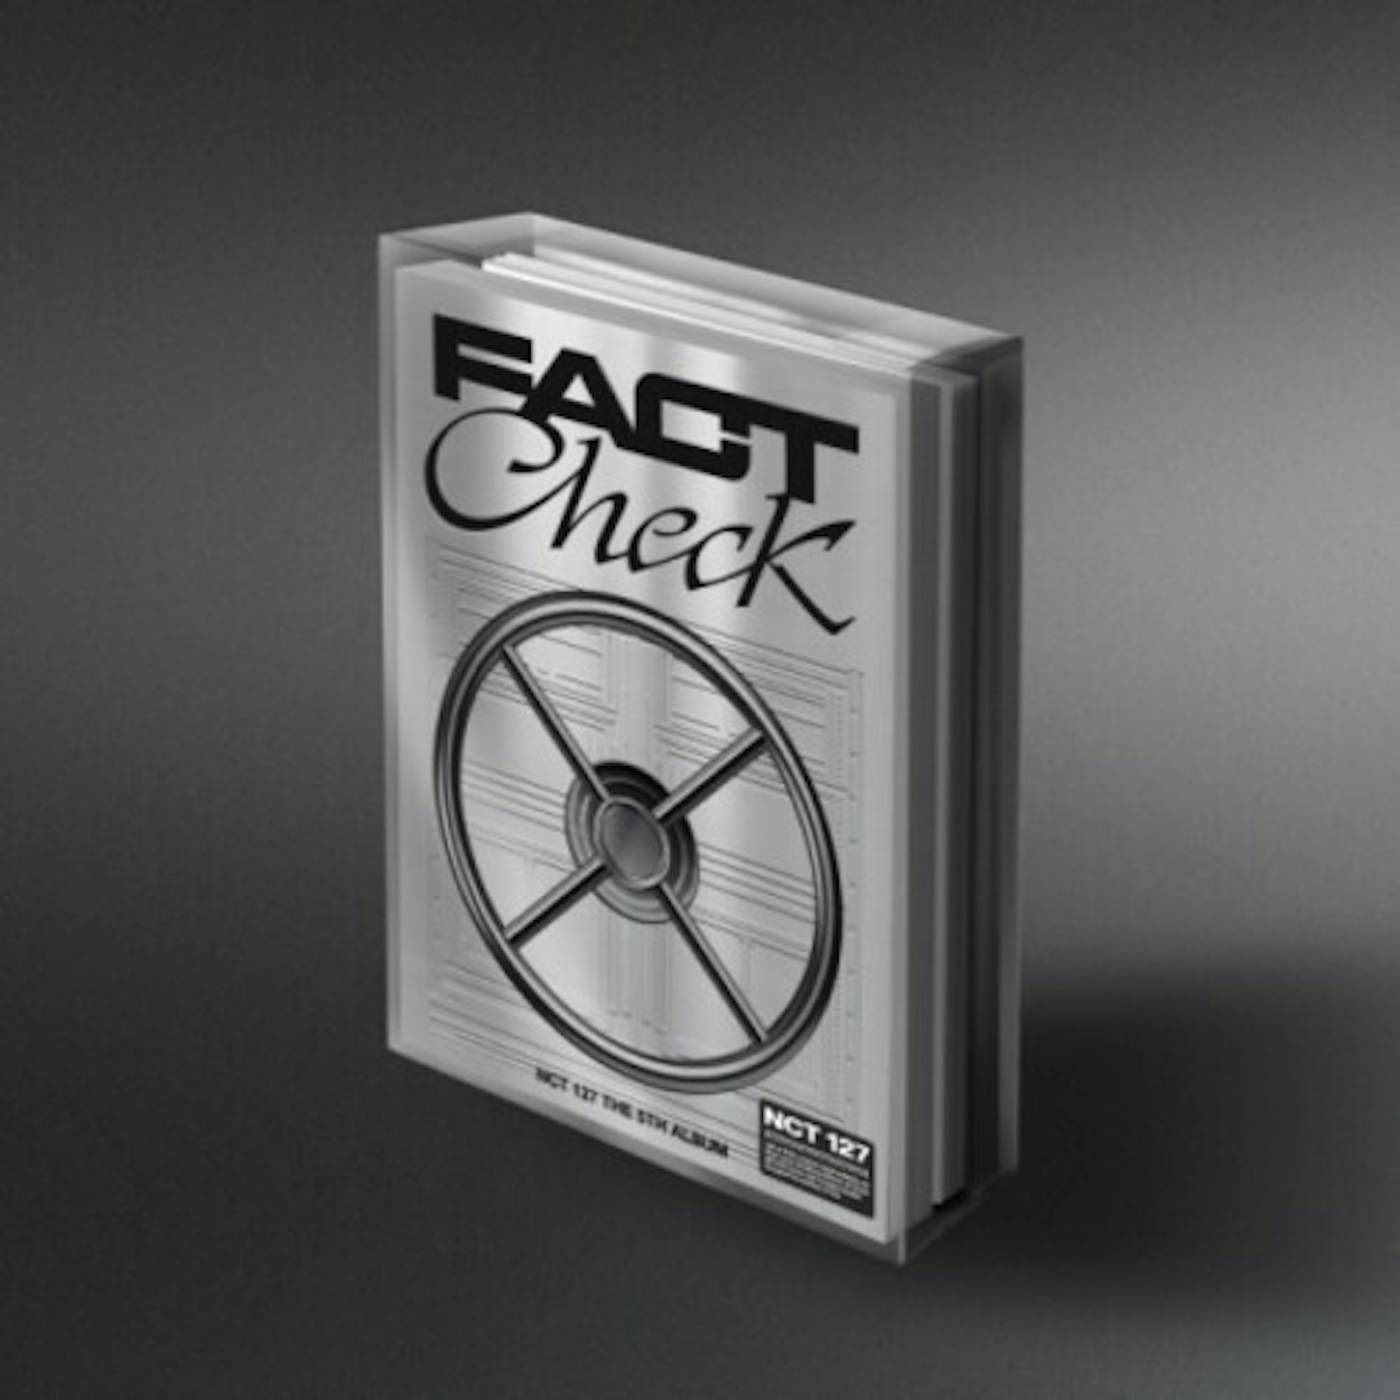 NCT 127 FACT CHECK - PHOTO CASE VERSION CD